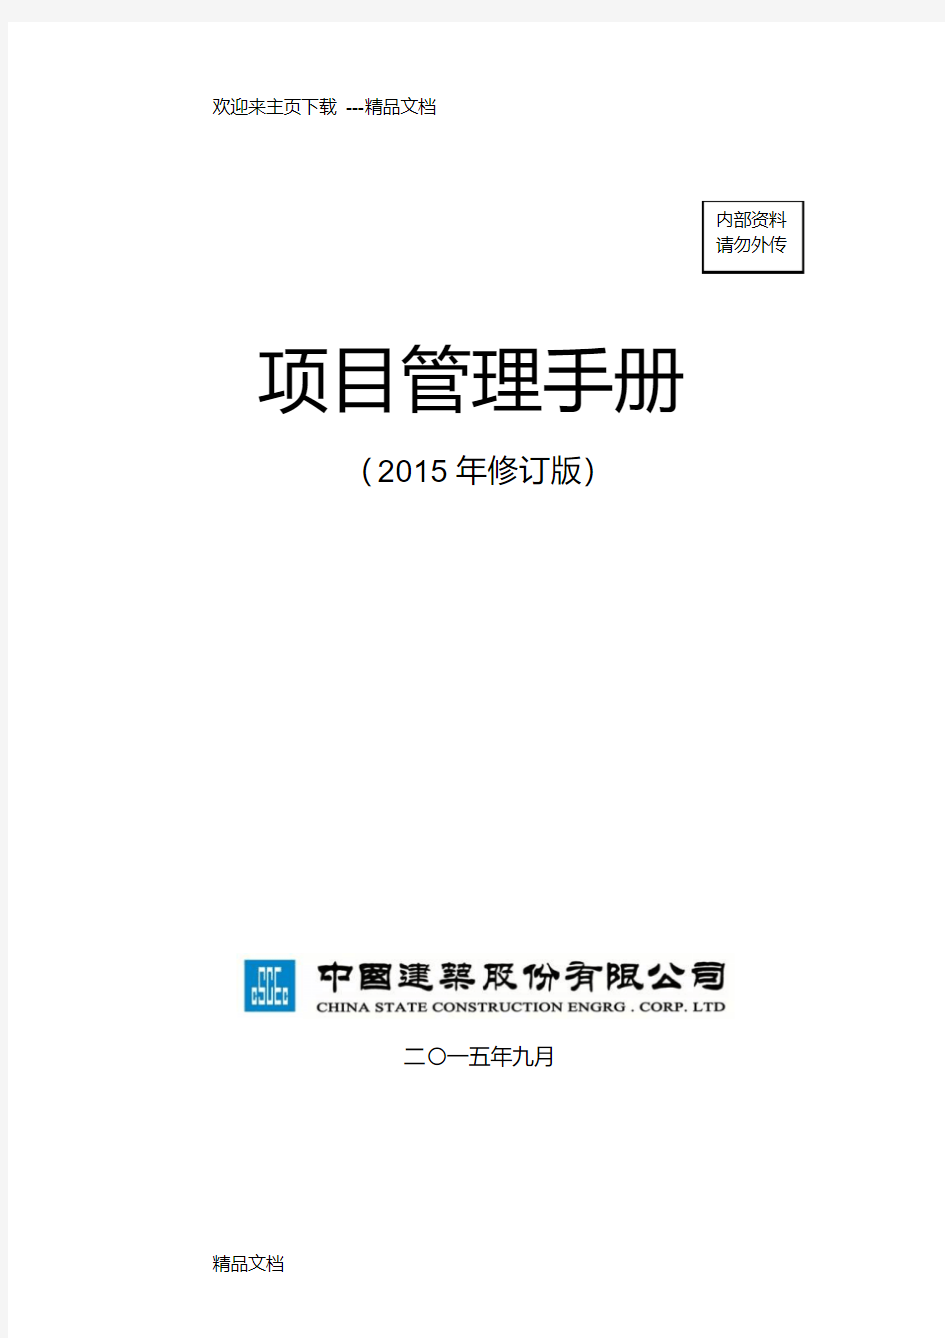 最新中建总公司《项目管理手册》年修订版最终稿(印刷版)